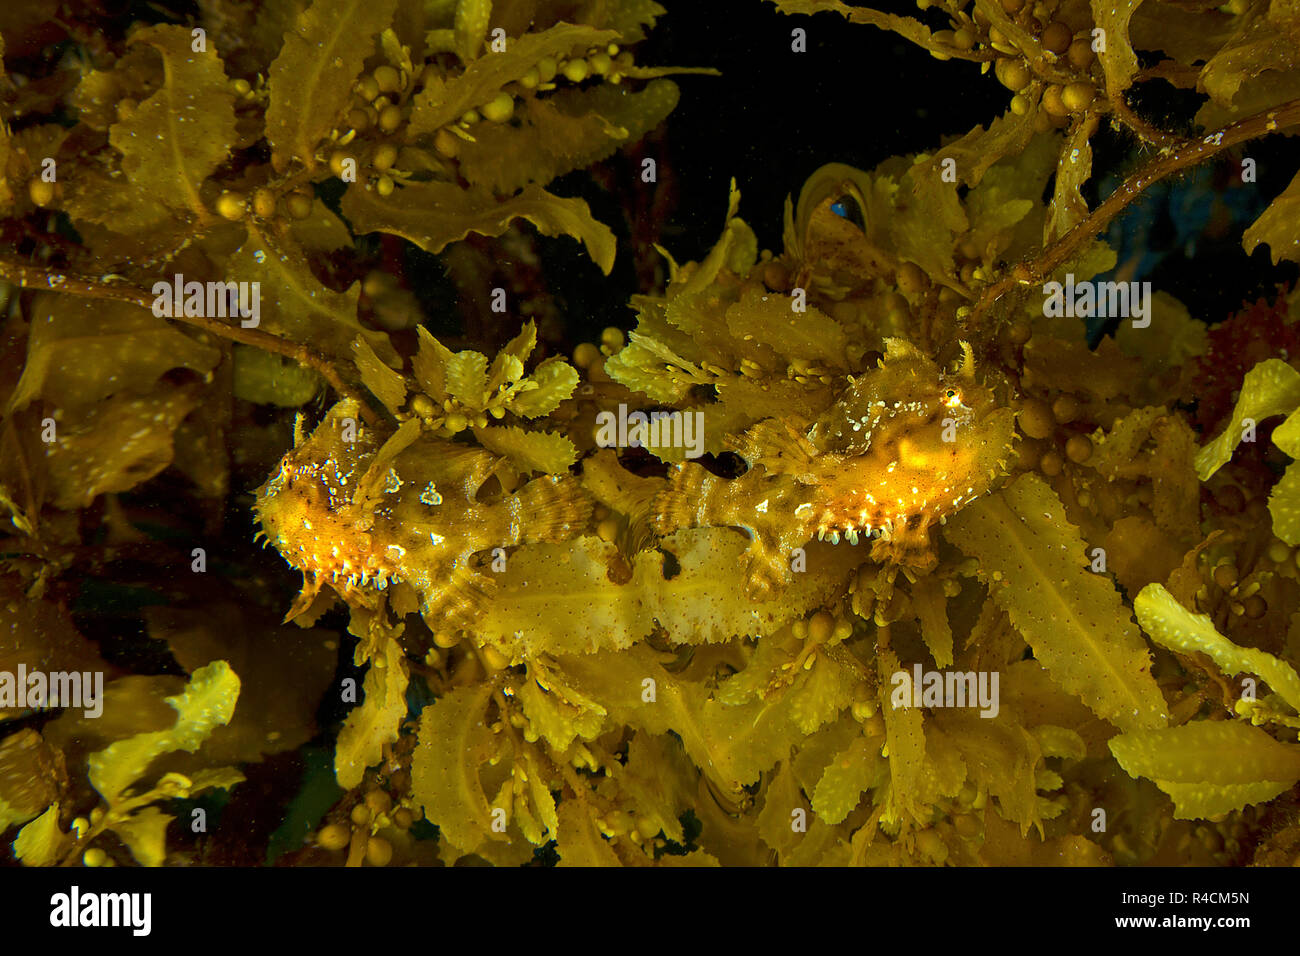 Poisson Grenouille ou Sargassumfish sargasses (Histiro histiro), paire entre les algues brunes (Sargassum muticum), Cenderawasih, Irian Jaya, Indonésie Banque D'Images